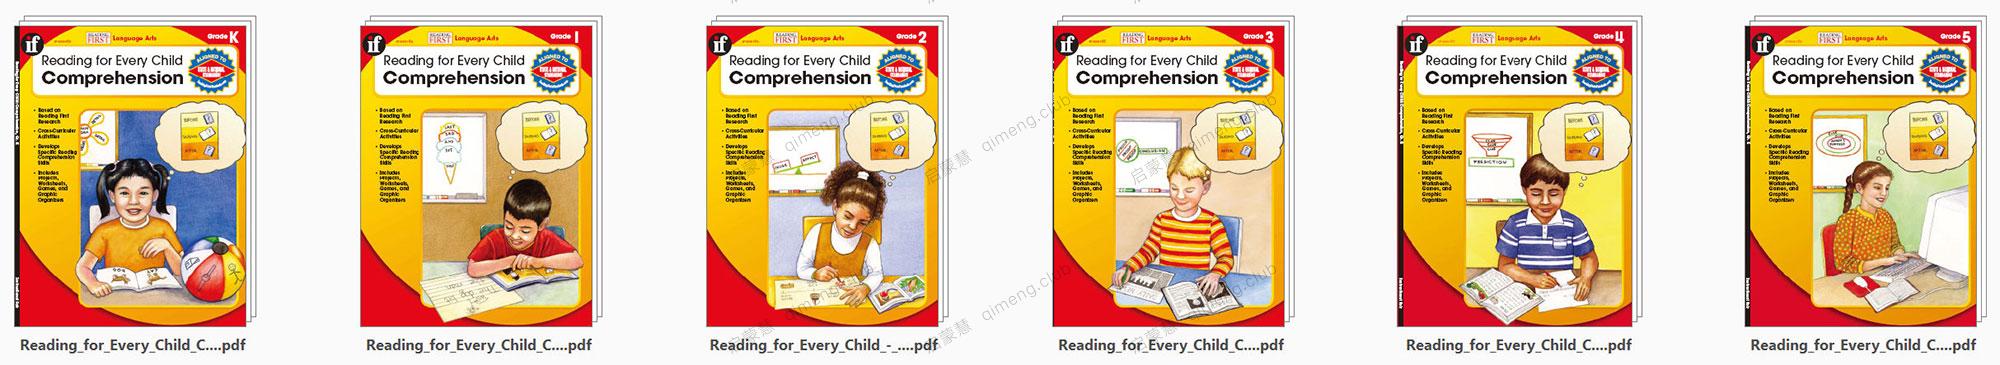 幼小阅读理解练习册《Reading for Every Child Comprehension》系列共6册（GK-G5）